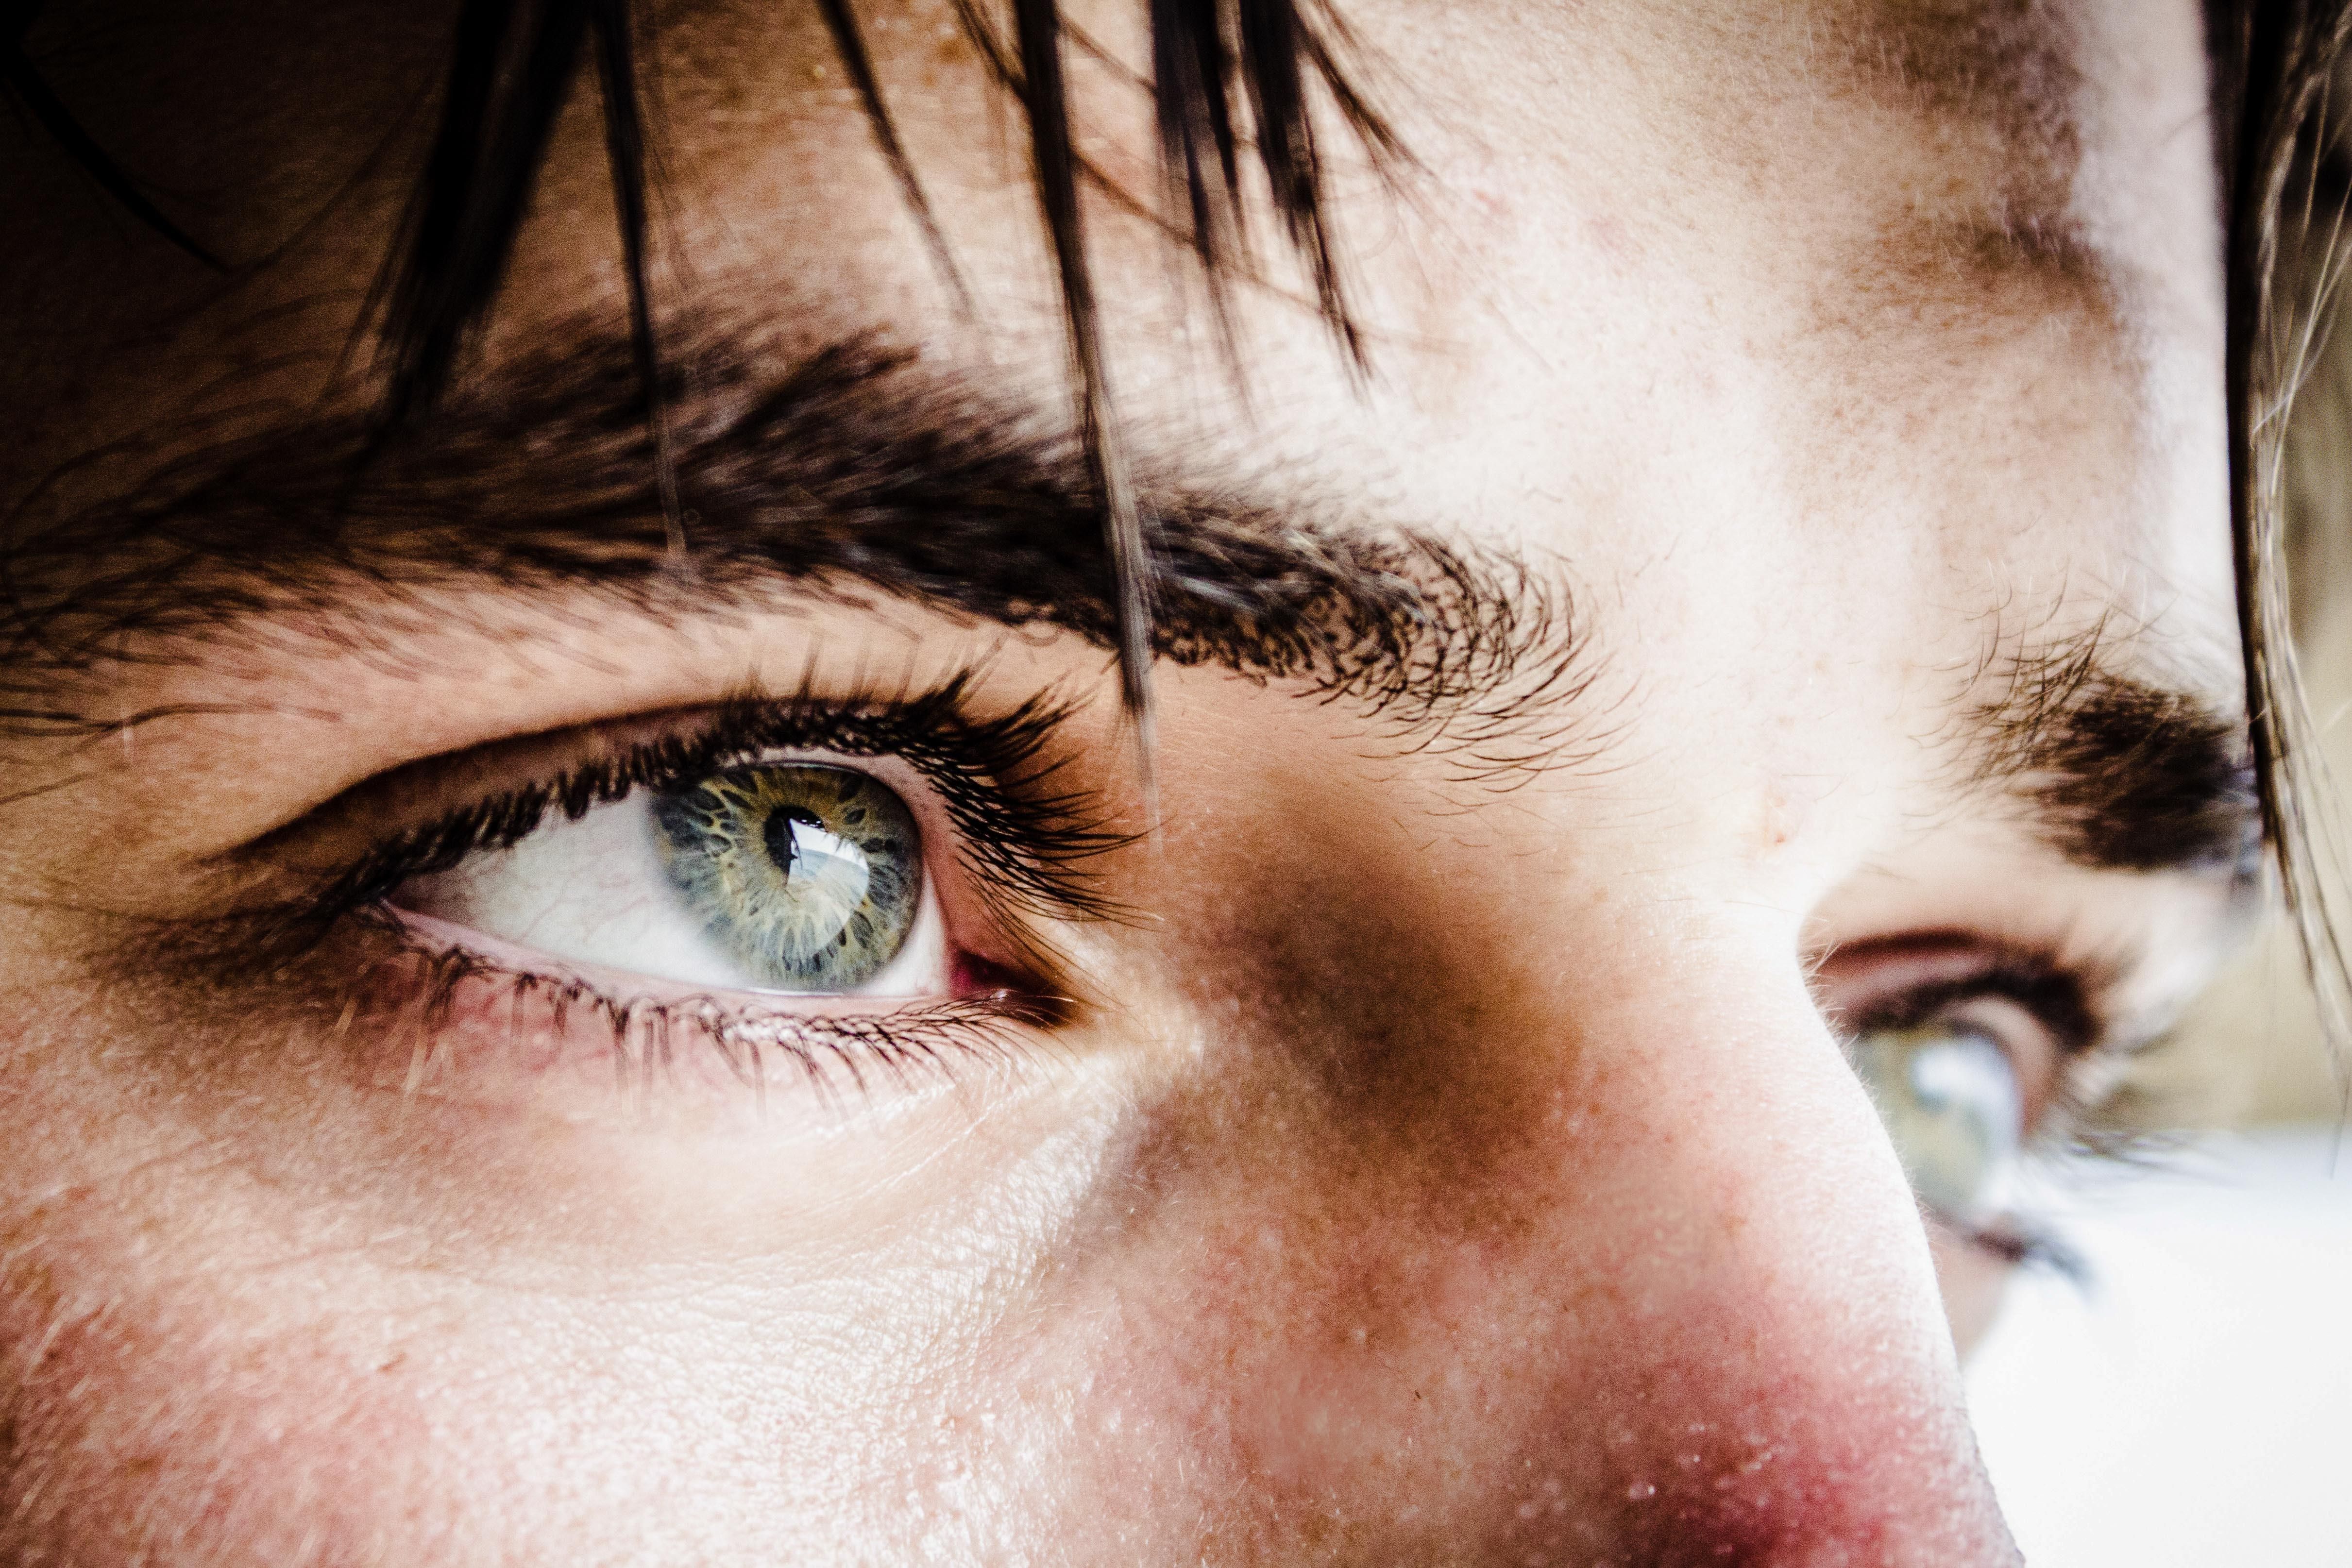 Медики объяснили, как определить недостаток витамина В1 по движению глаз